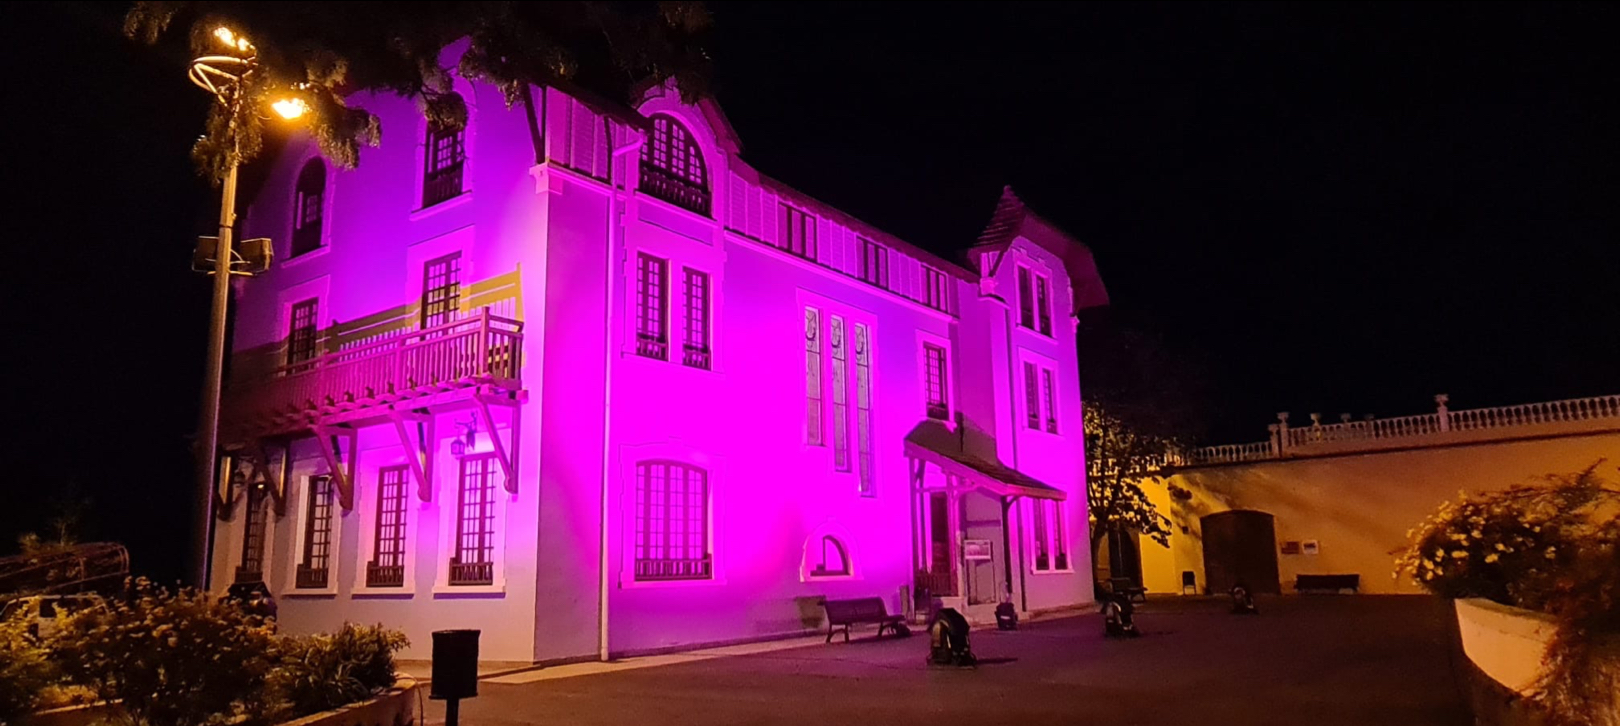 La iluminación de la fachada del espacio cultural doña Chana cierra la celebración del día internacional de eliminación de la violencia contra la mujer